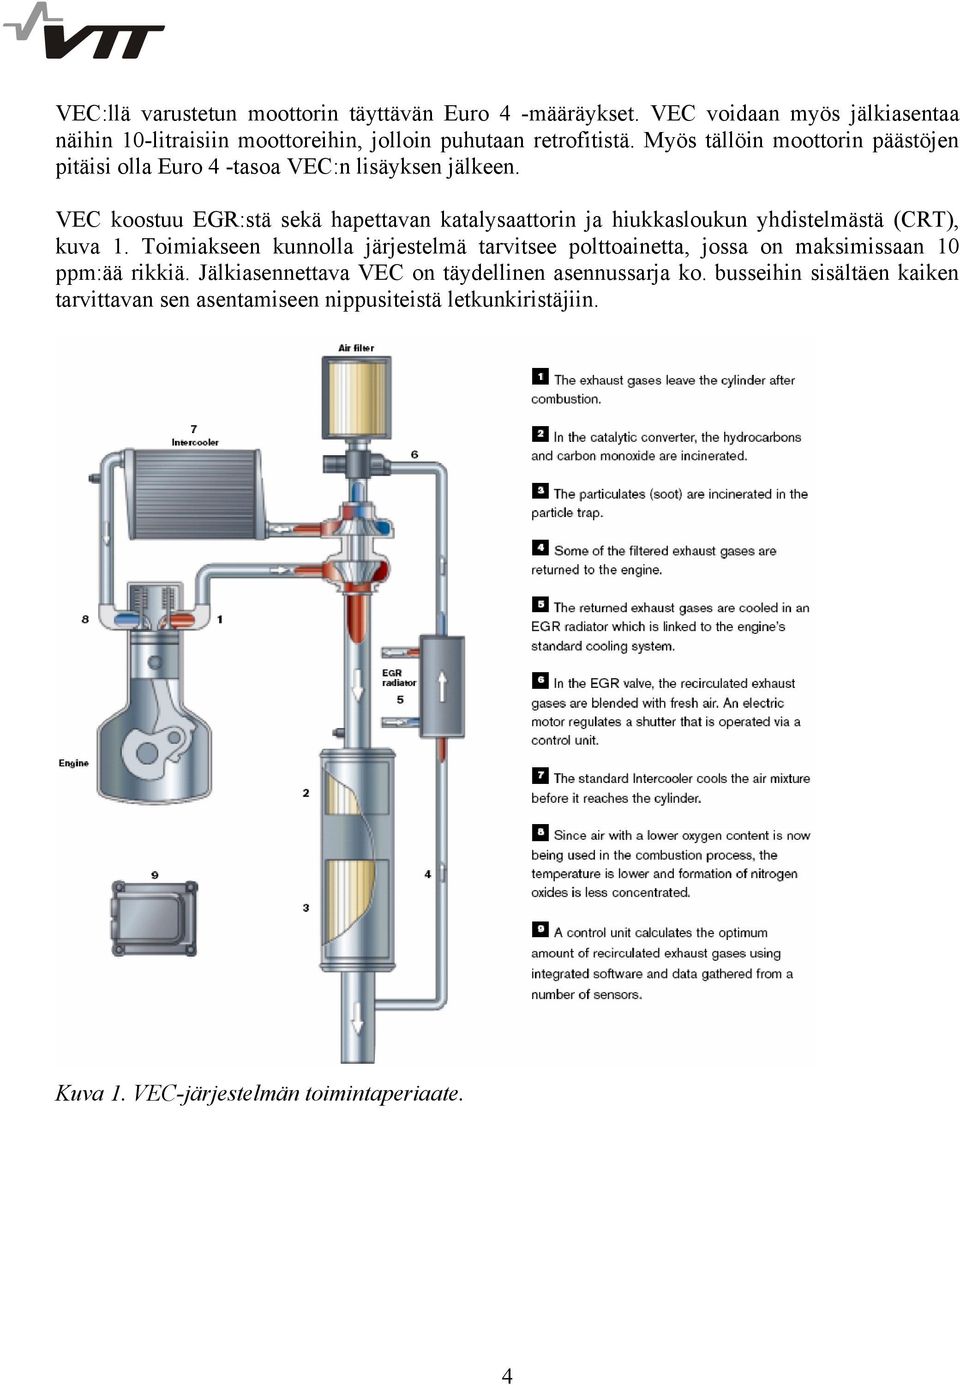 VEC koostuu EGR:stä sekä hapettavan katalysaattorin ja hiukkasloukun yhdistelmästä (CRT), kuva 1.